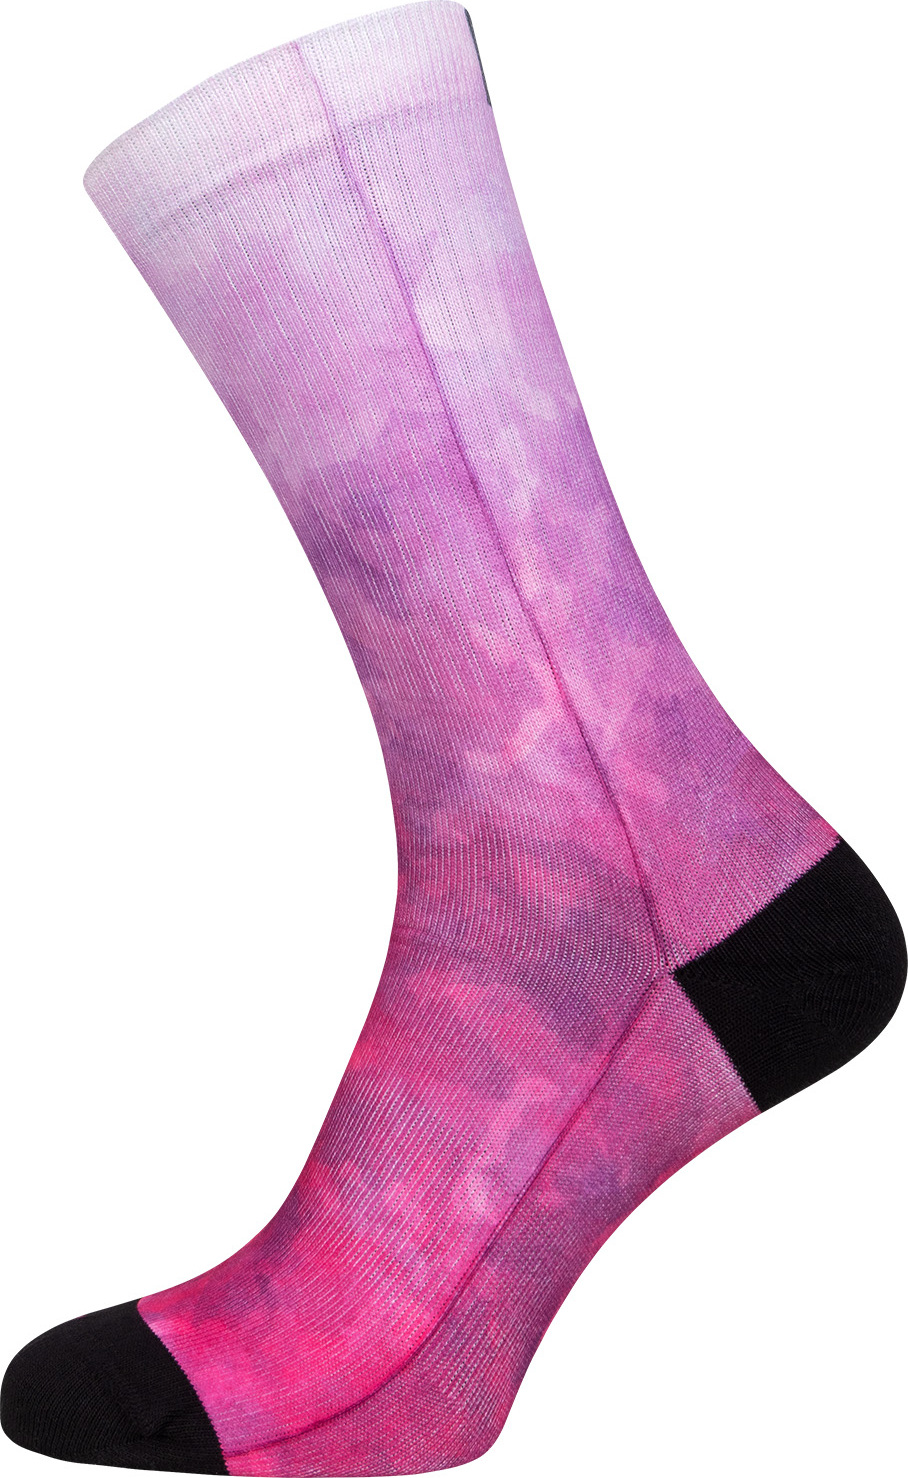 Ponožky ELEVEN Nina Candy růžové Velikost: S-M (36 - 40)